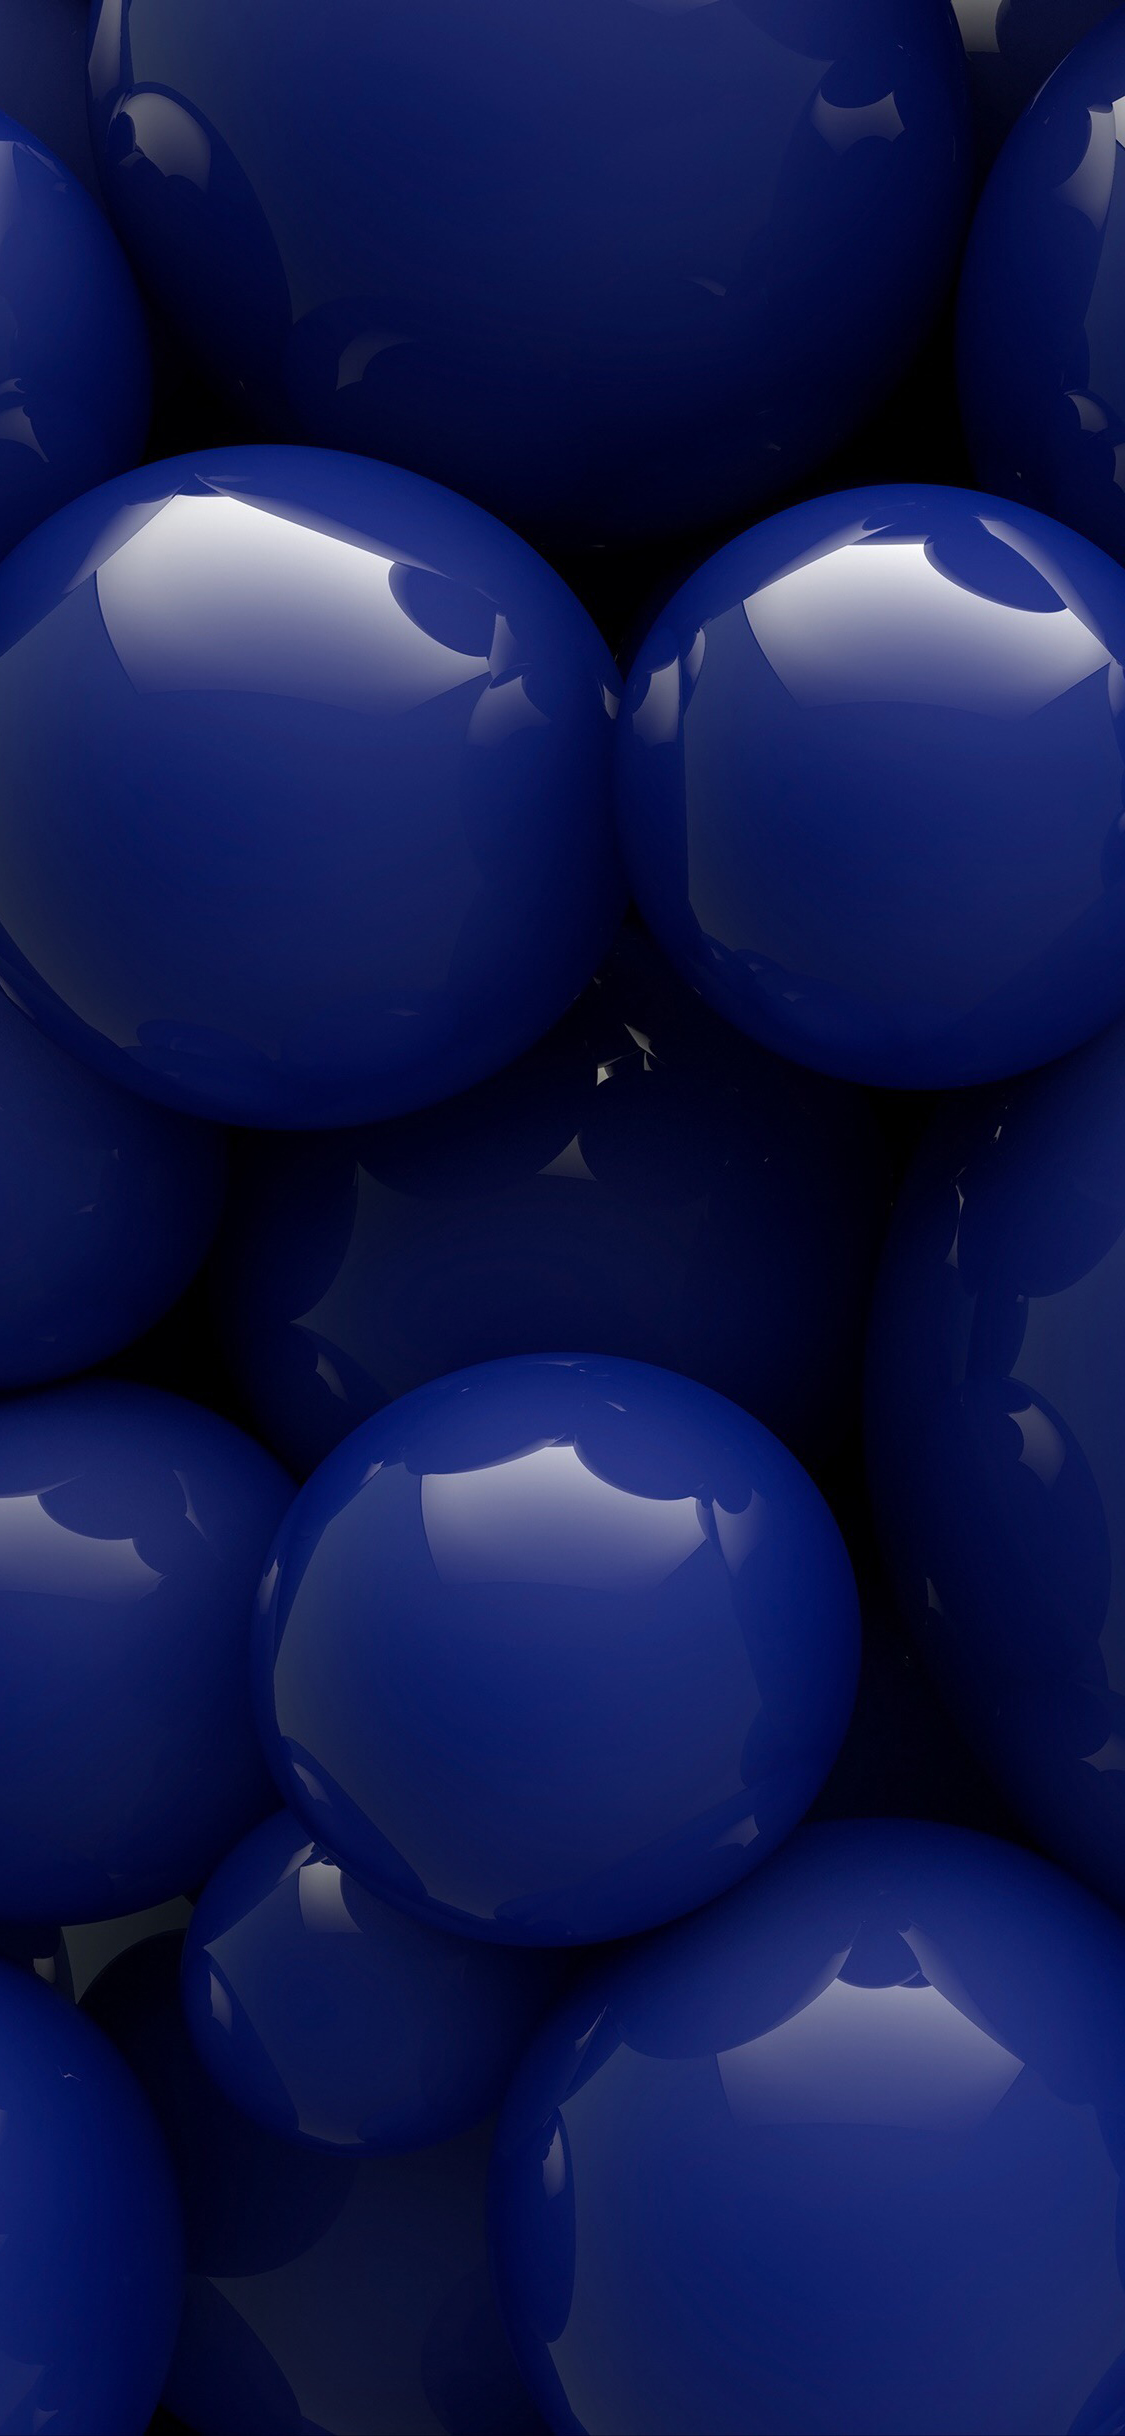 球 蓝色 立体 密集 苹果手机高清壁纸 1125x2436_爱思